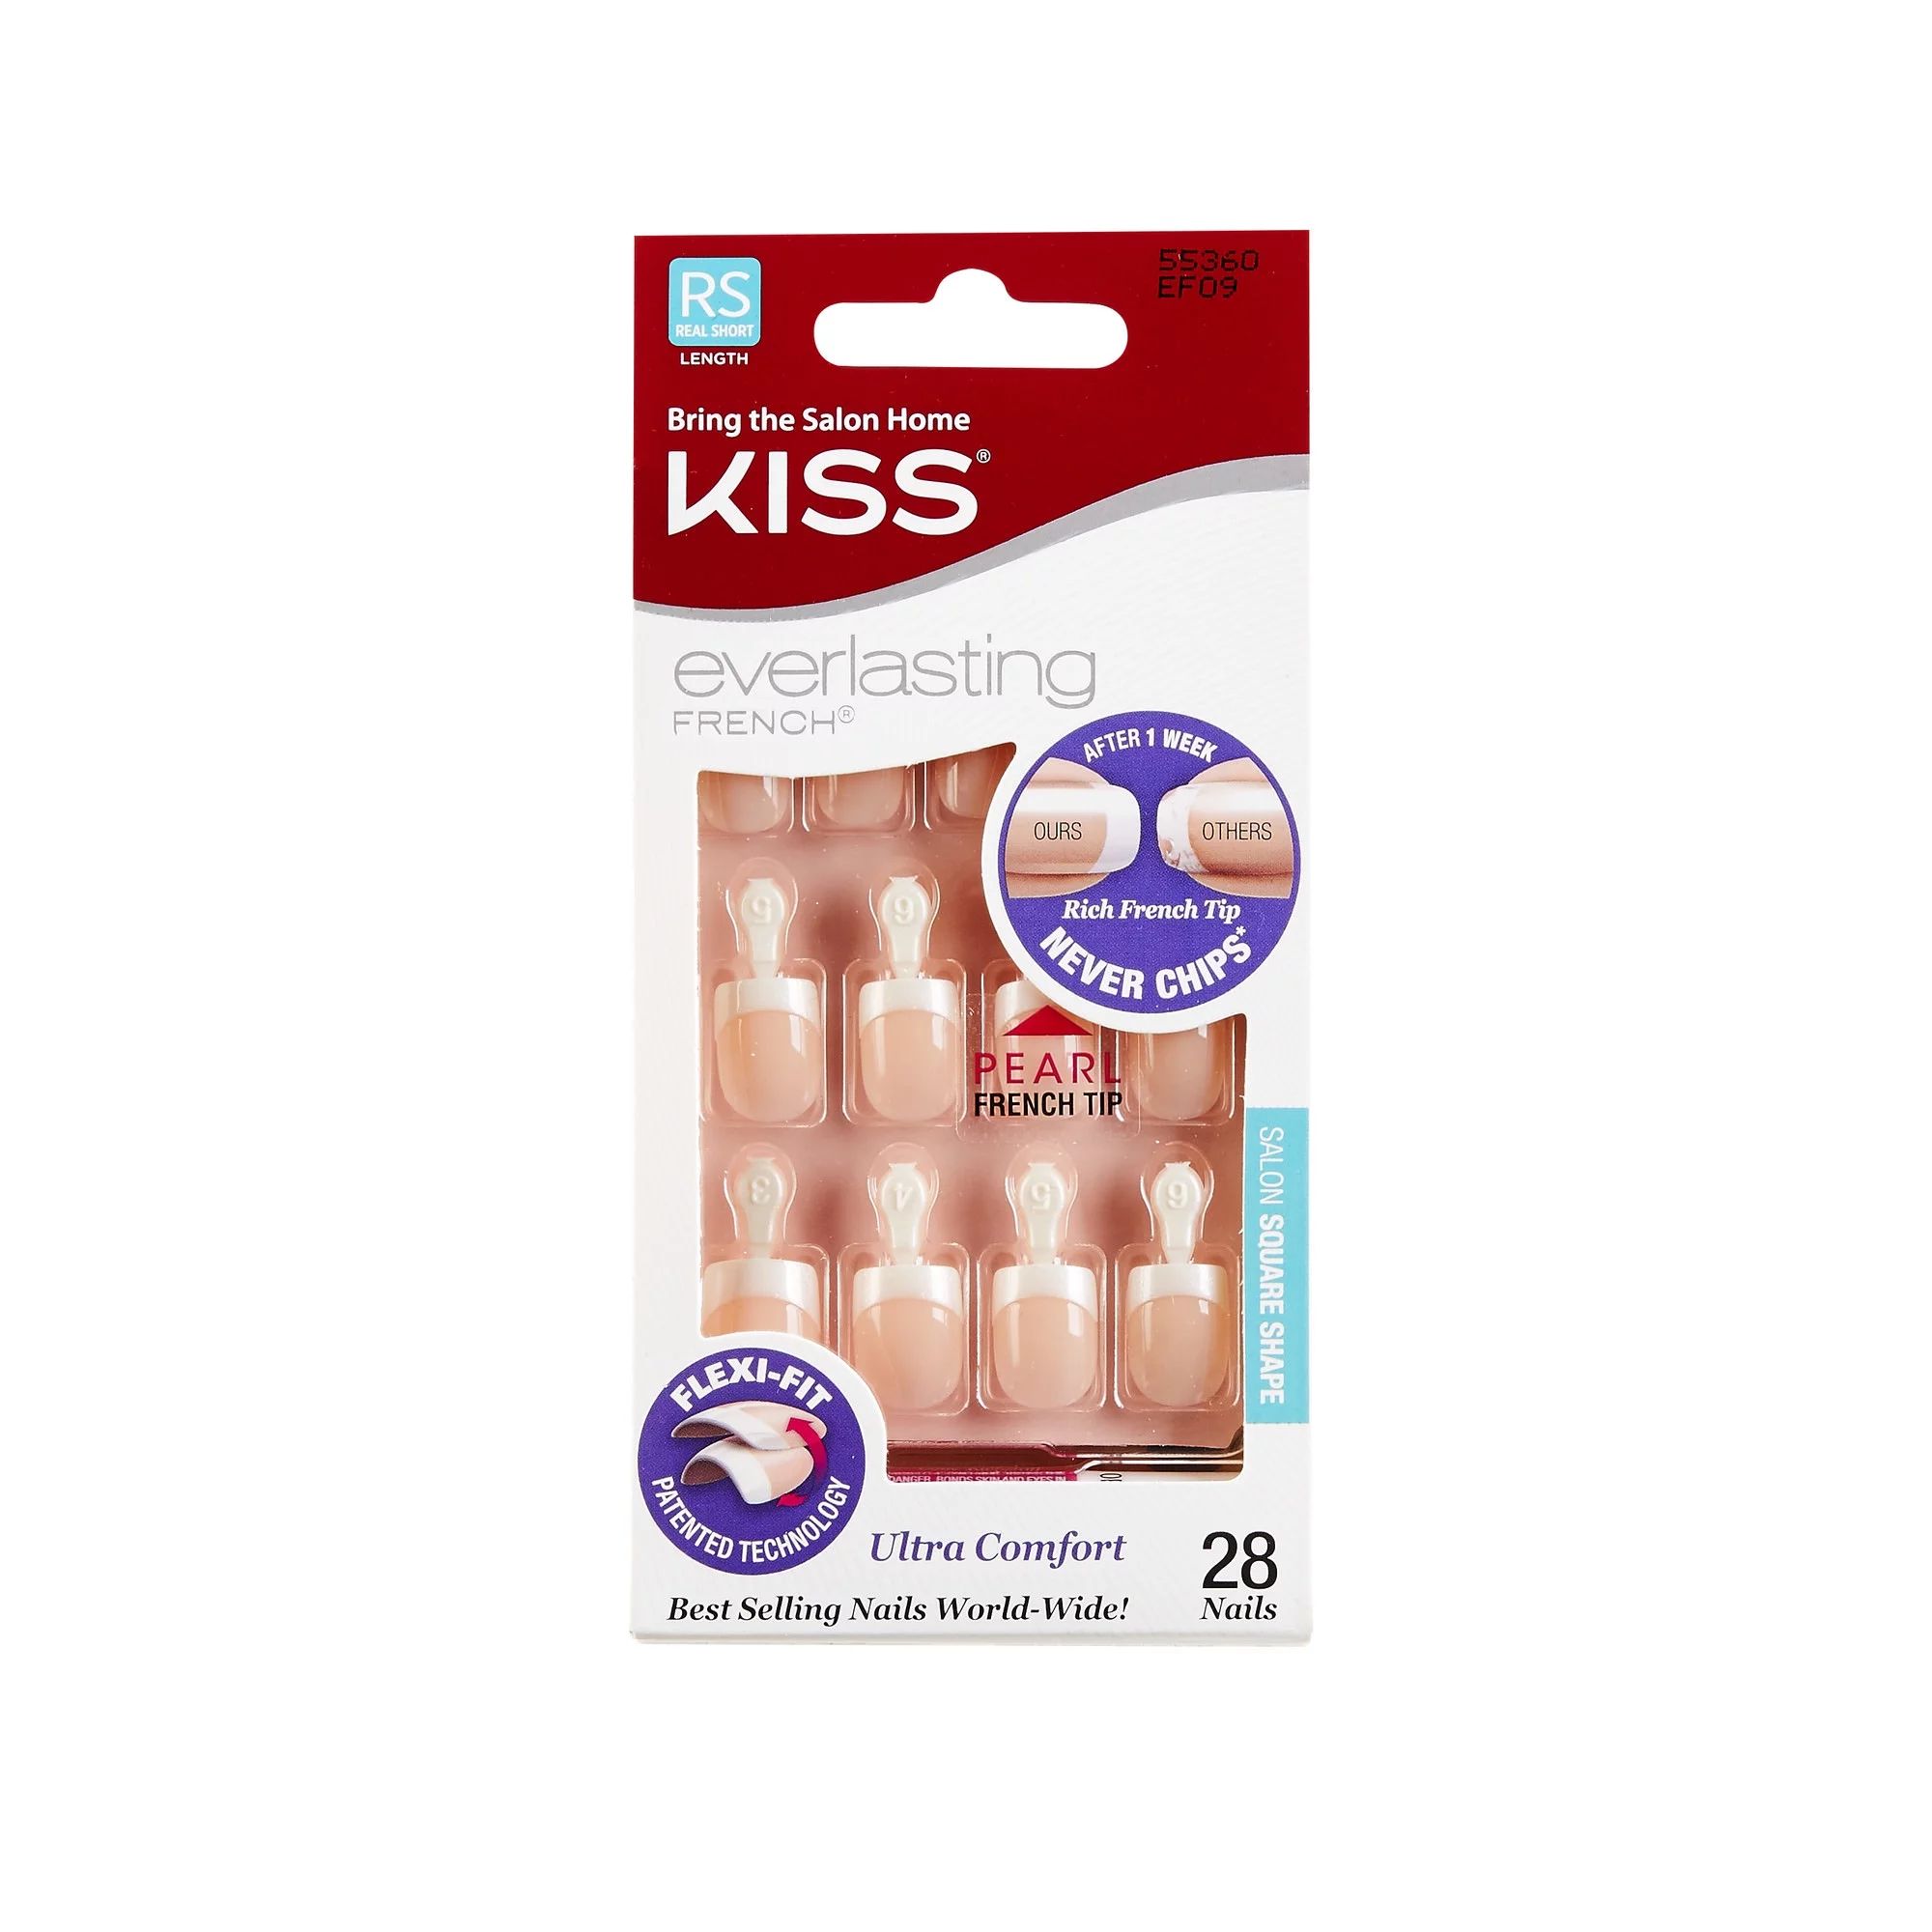 KISS Everlasting French Press on Fake Nails - Real Short | Walmart (US)